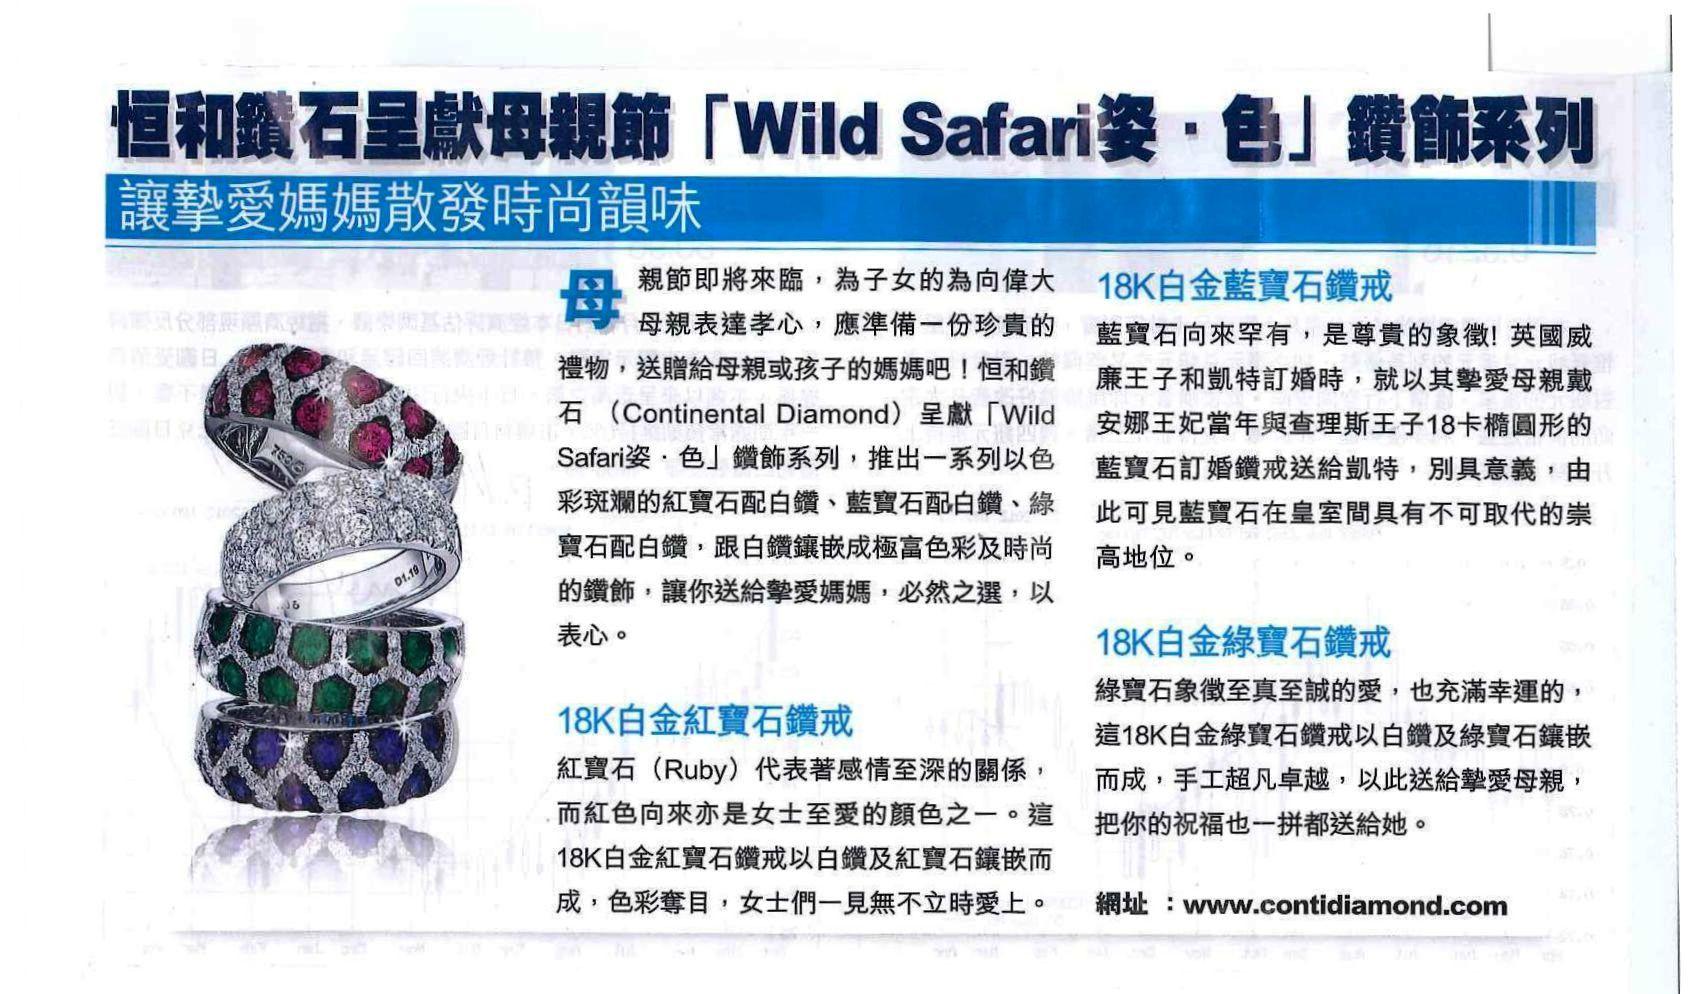 Wild Safari 姿色系列 Capital Weekly - 13 Apr 2012